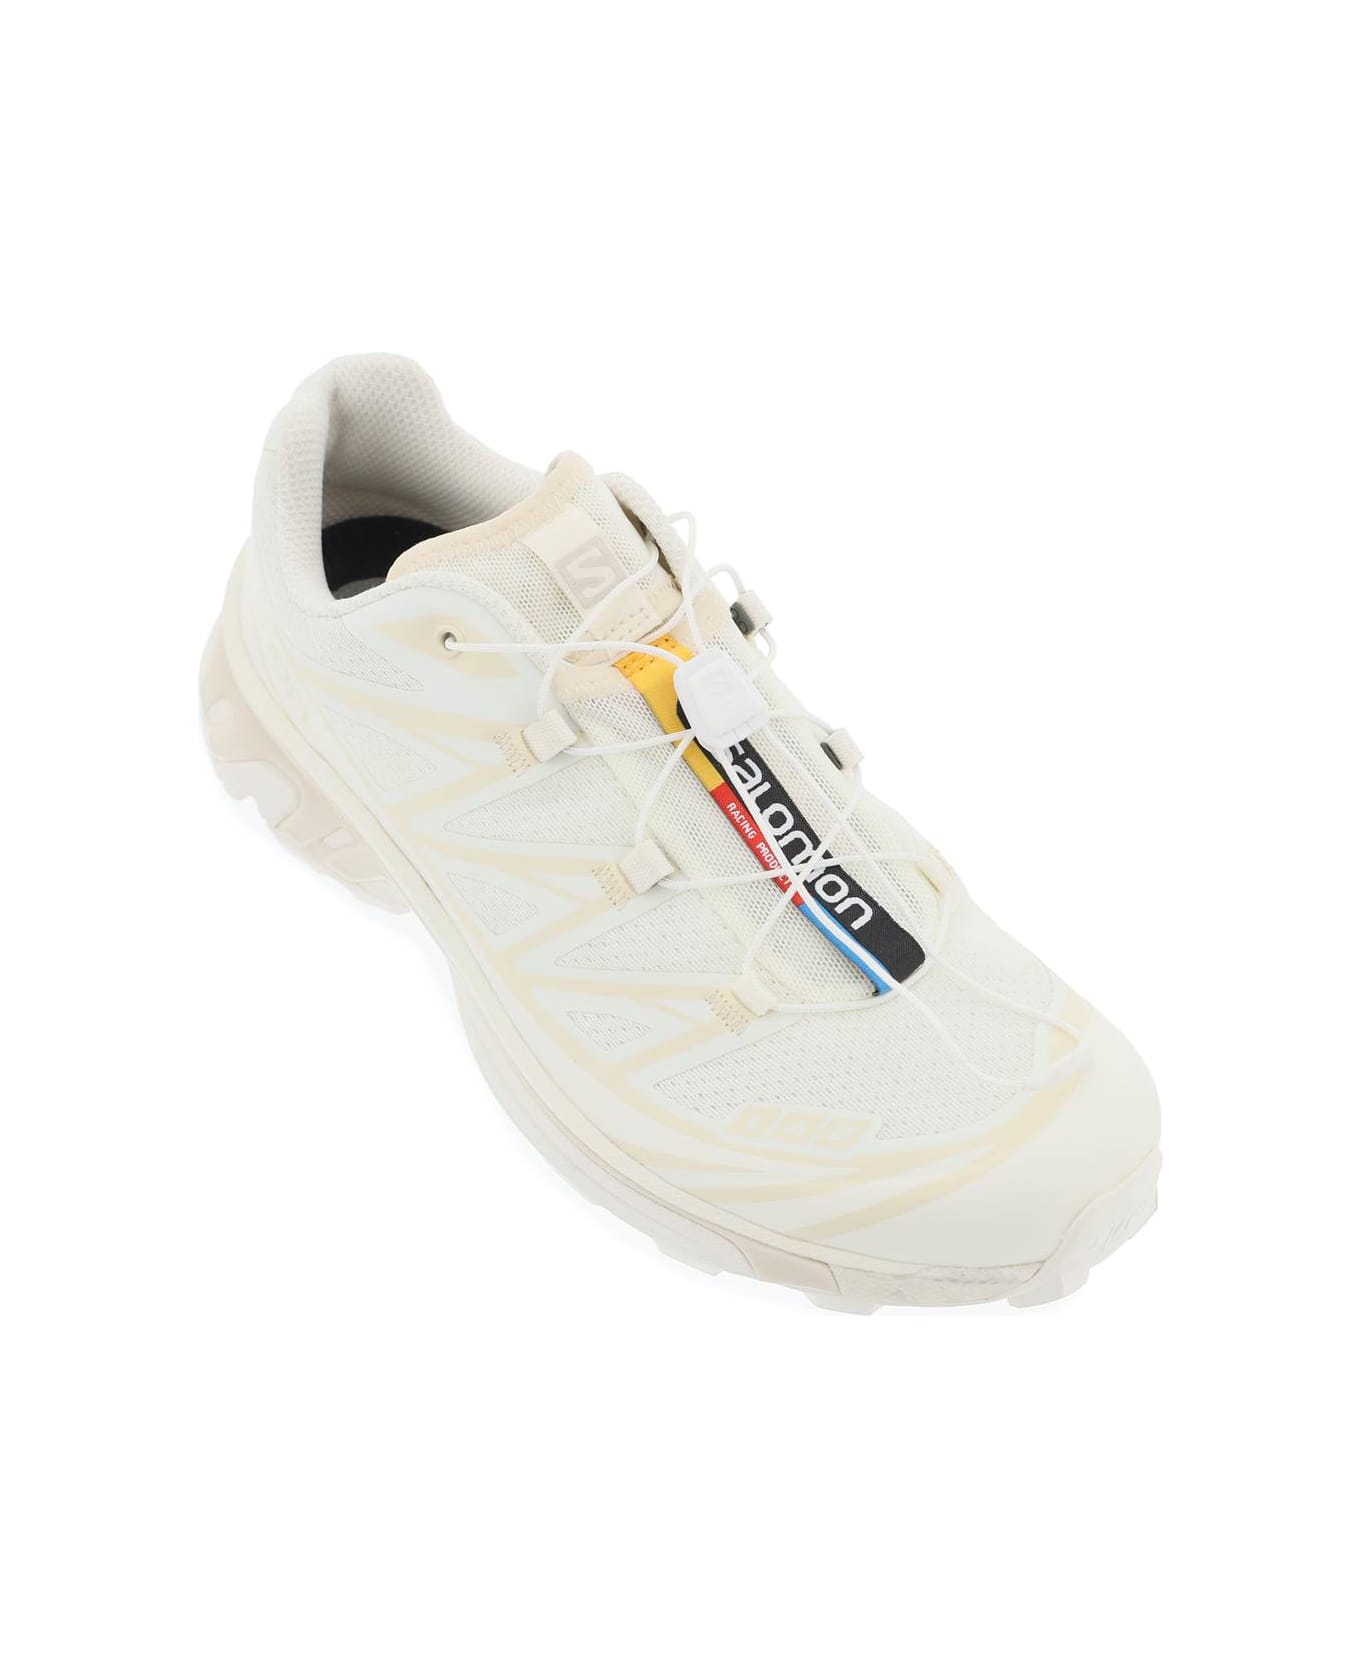 Salomon Xt-6 Sneakers - VANILLA ICE VANILLA ICE ALMOND MILK (White)